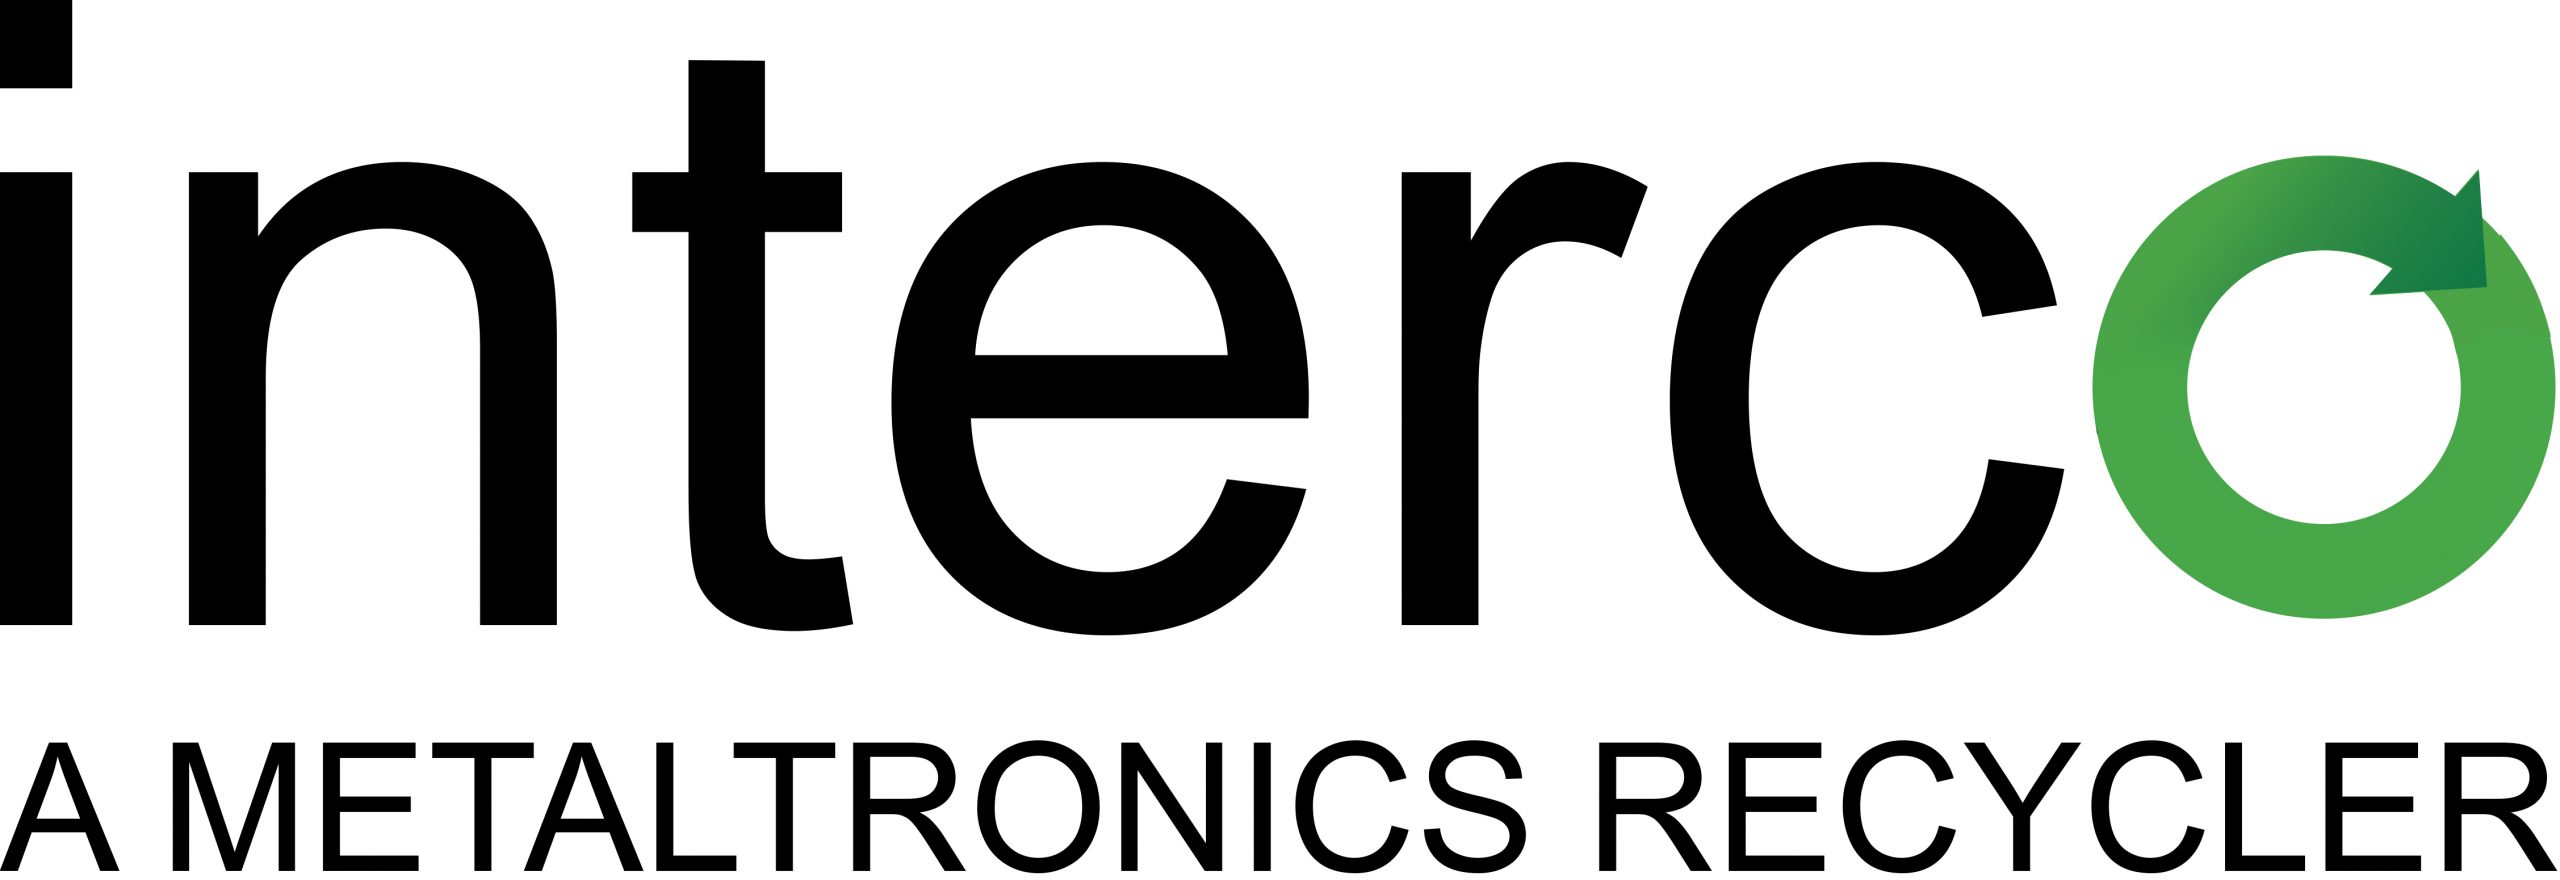 Interco-A Metaltronics Recycler logo